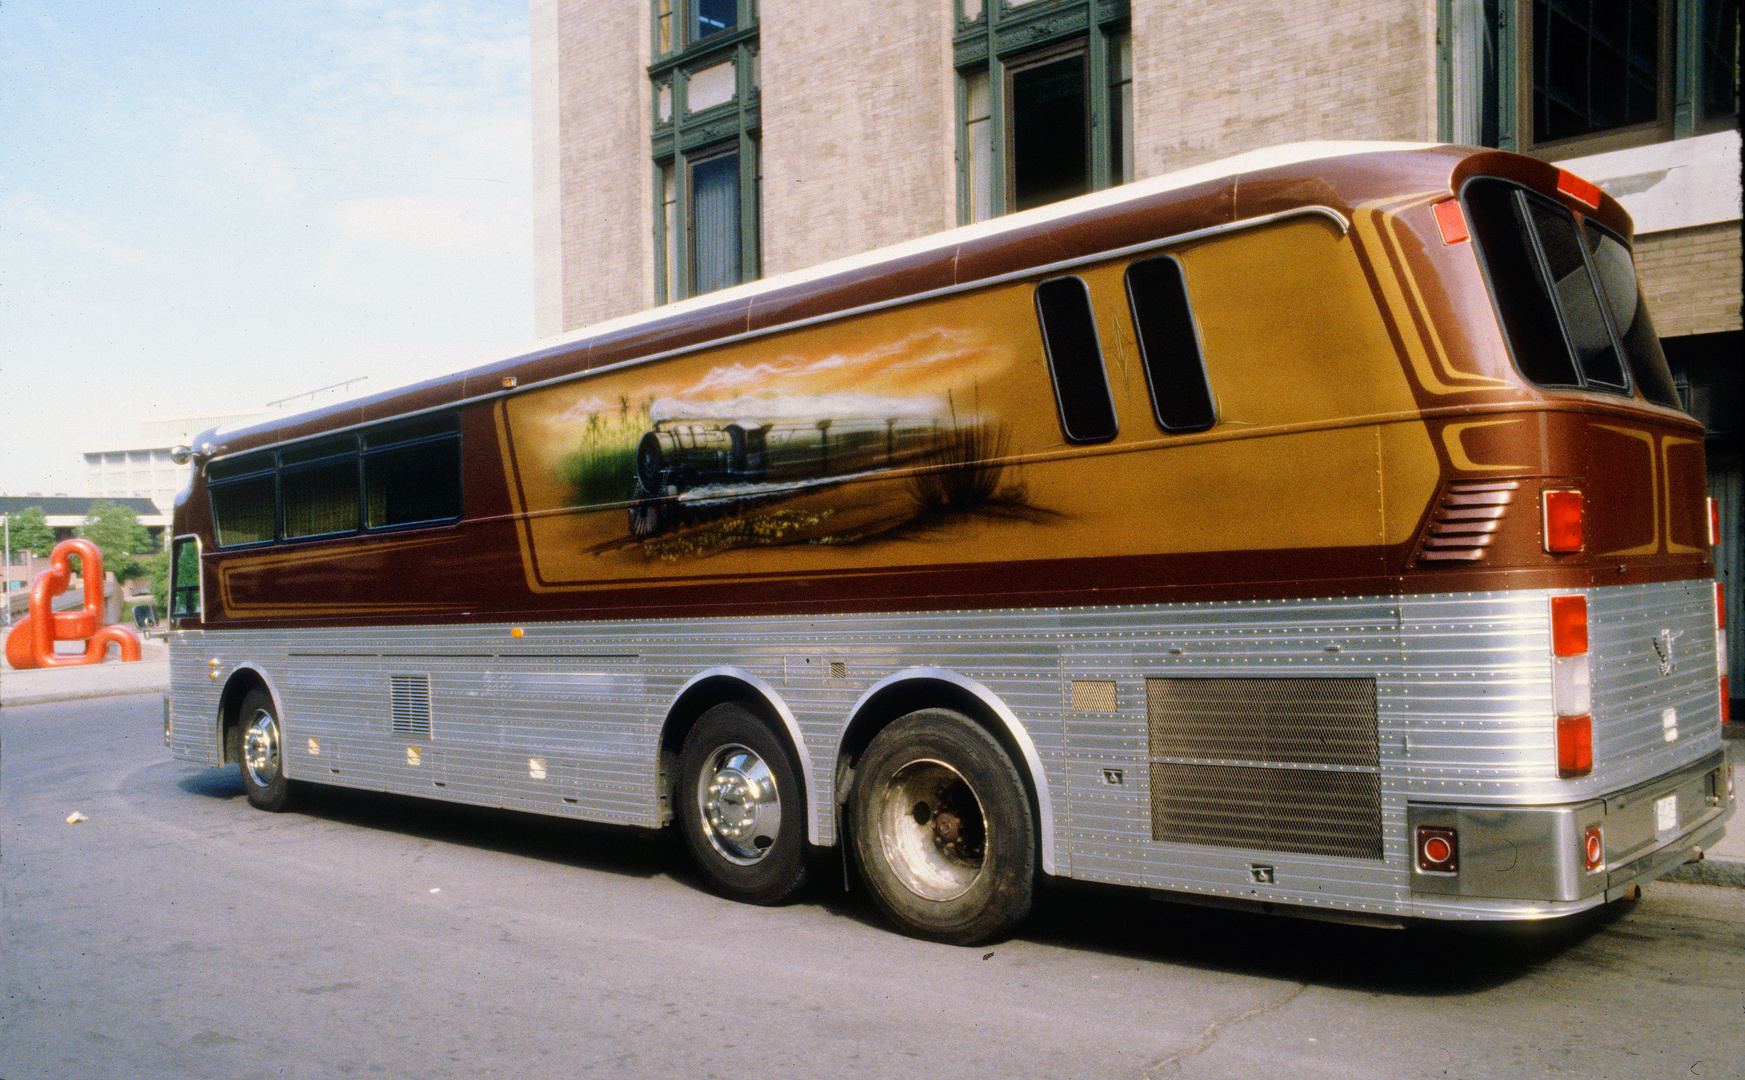 Bus-Wohnmobil mit "Steam Train" Graffitti der besonderen Art, Rochester, NY, 1981